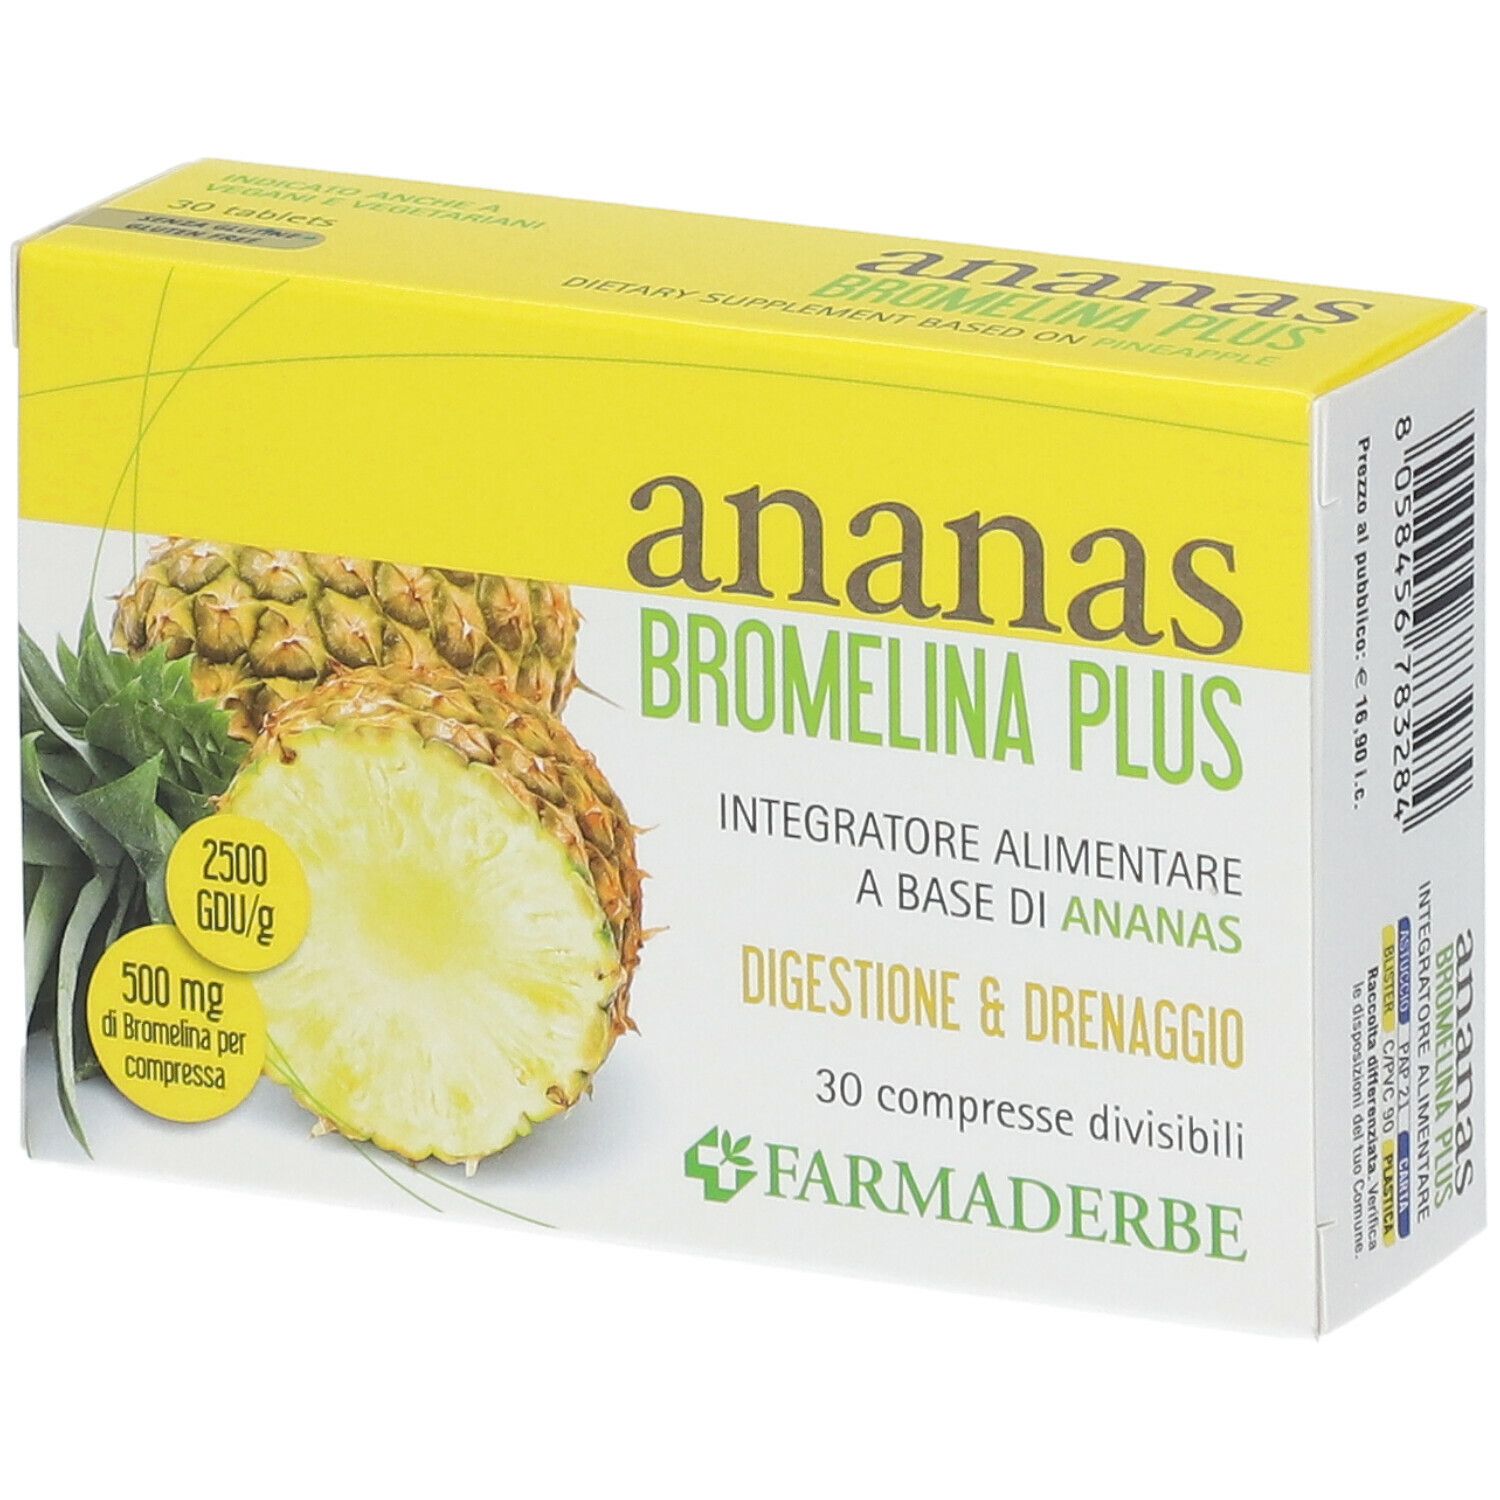 Image of FARMADERBE Ananas Bromelina Plus